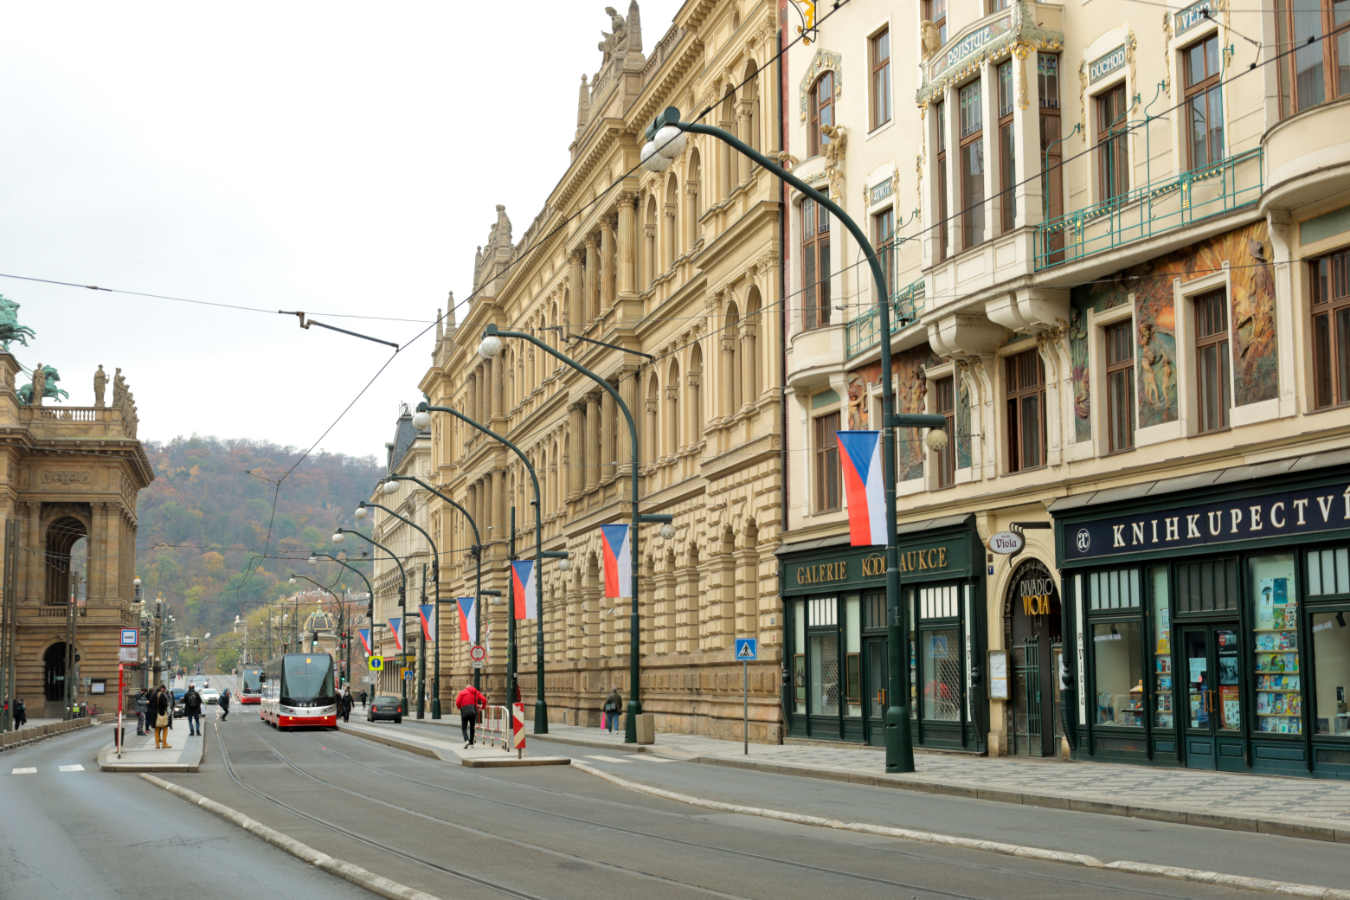 státní vlajky na stožárech veřejného osvětlení v historickém centru města